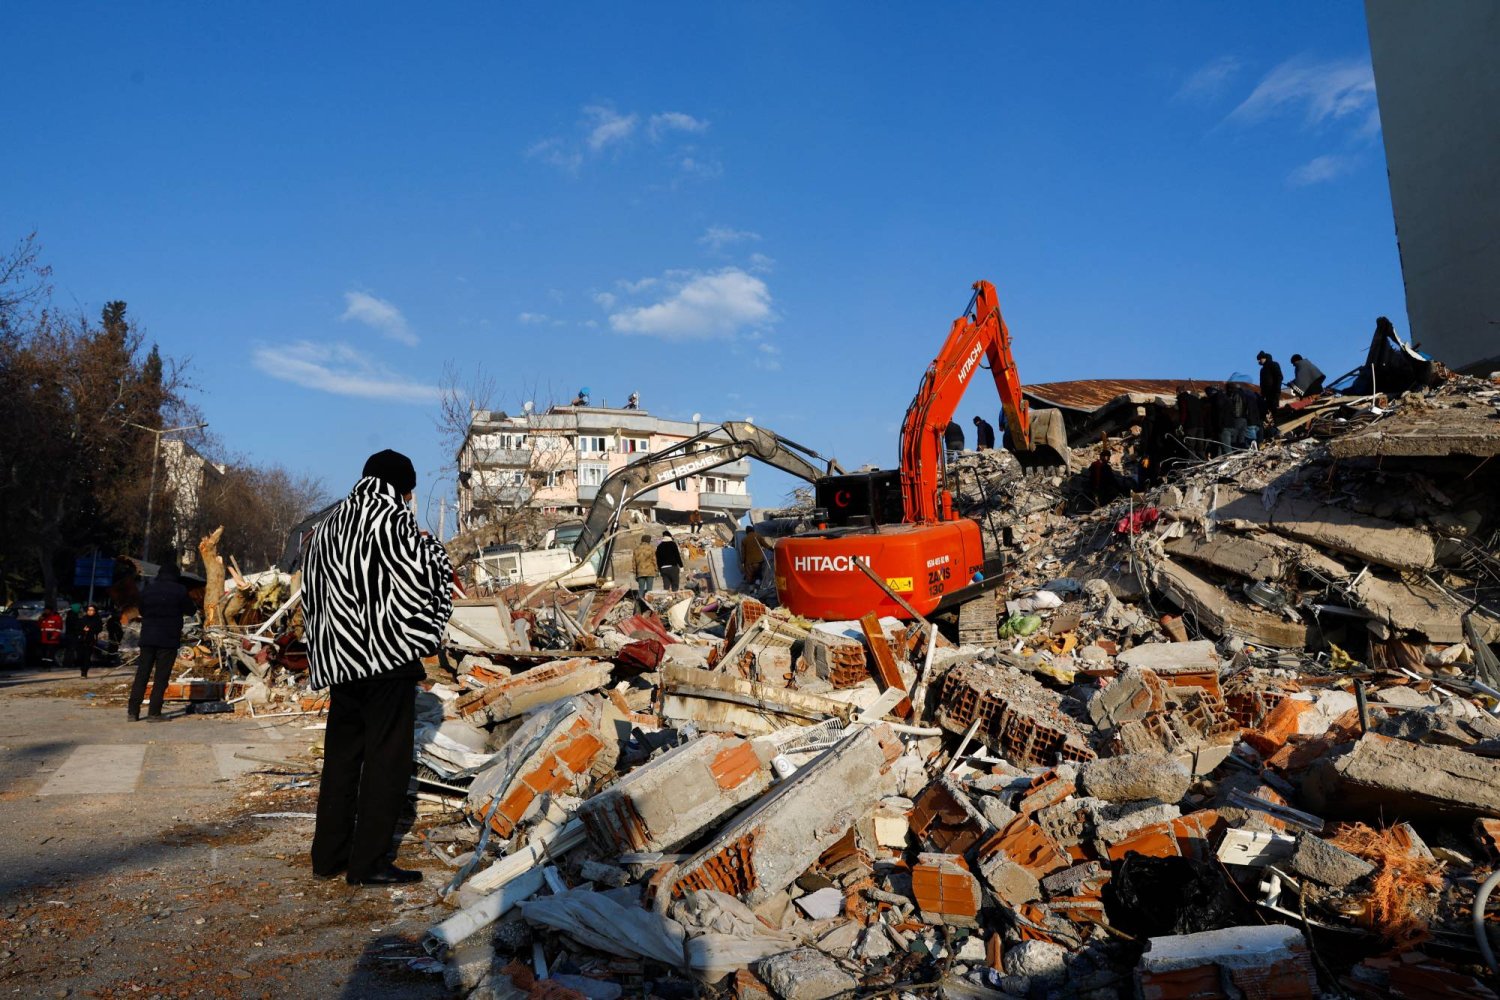 شخص ينظر إلى الأنقاض والحطام بعد زلزال في كهرمان مرعش، تركيا 8 فبراير 2023 (رويترز)